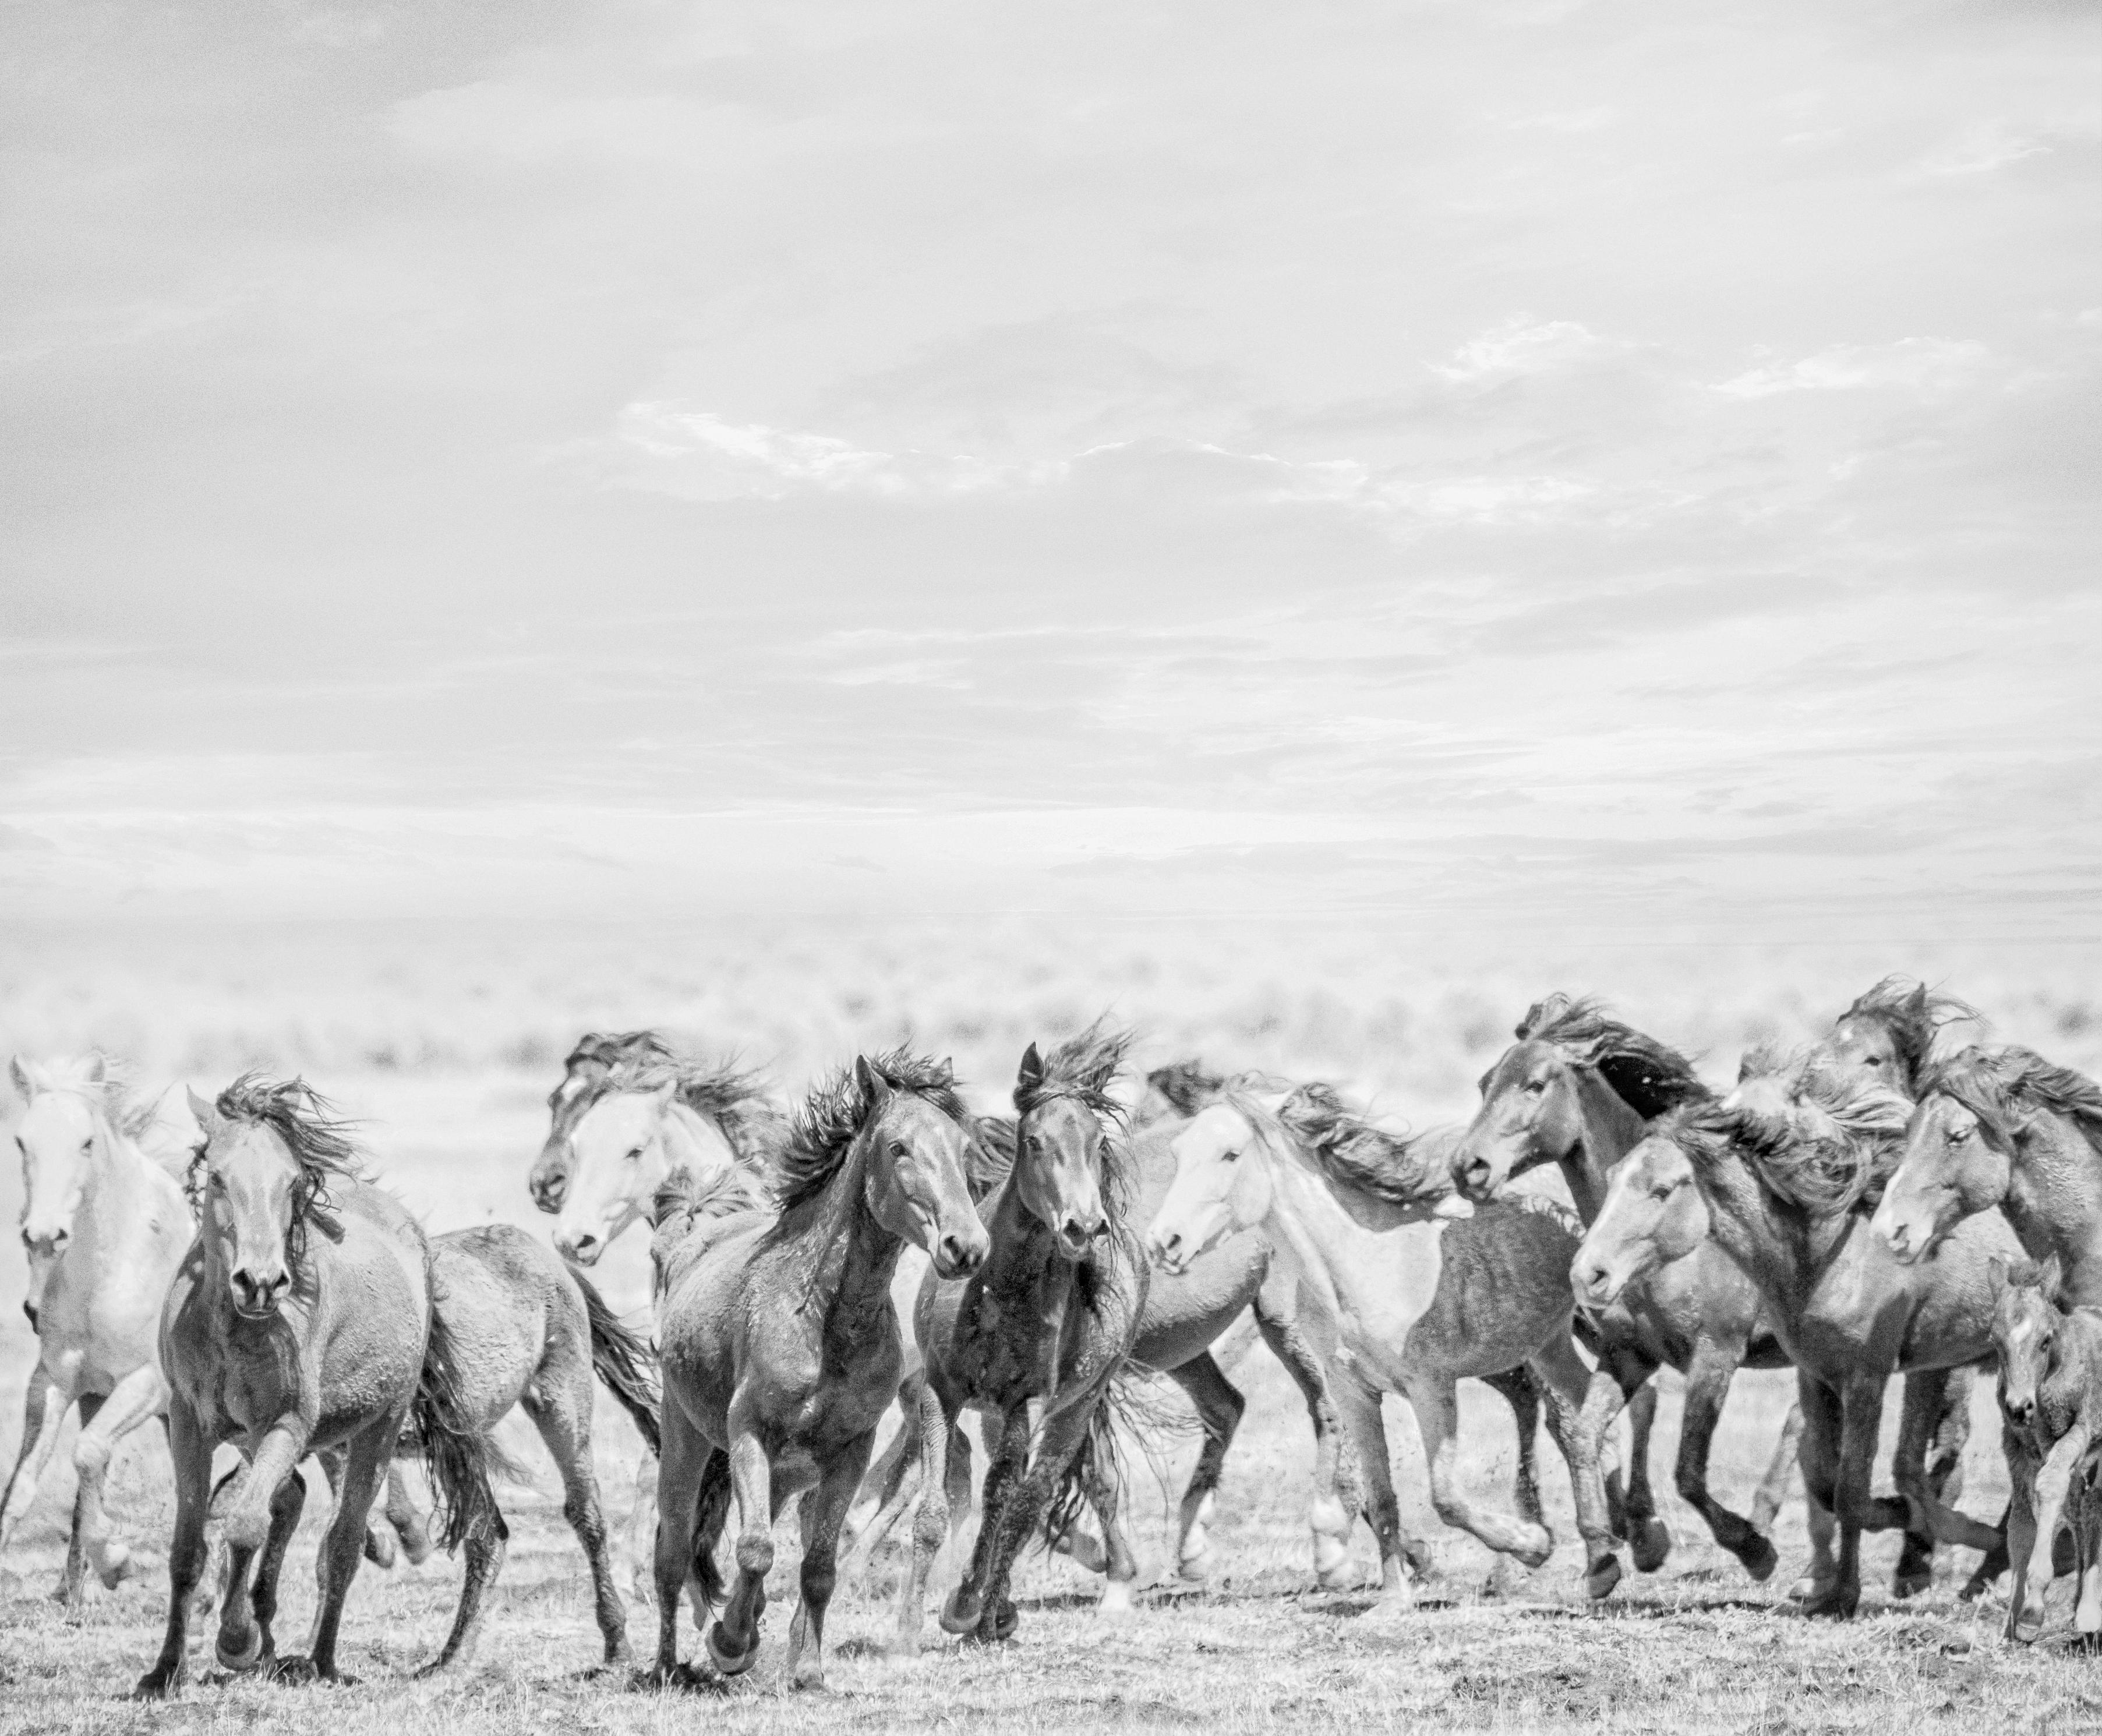 Black and White Photograph Shane Russeck - "Go West"  28x40 - Photographie en noir et blanc de chevaux sauvages - Photo de moutons